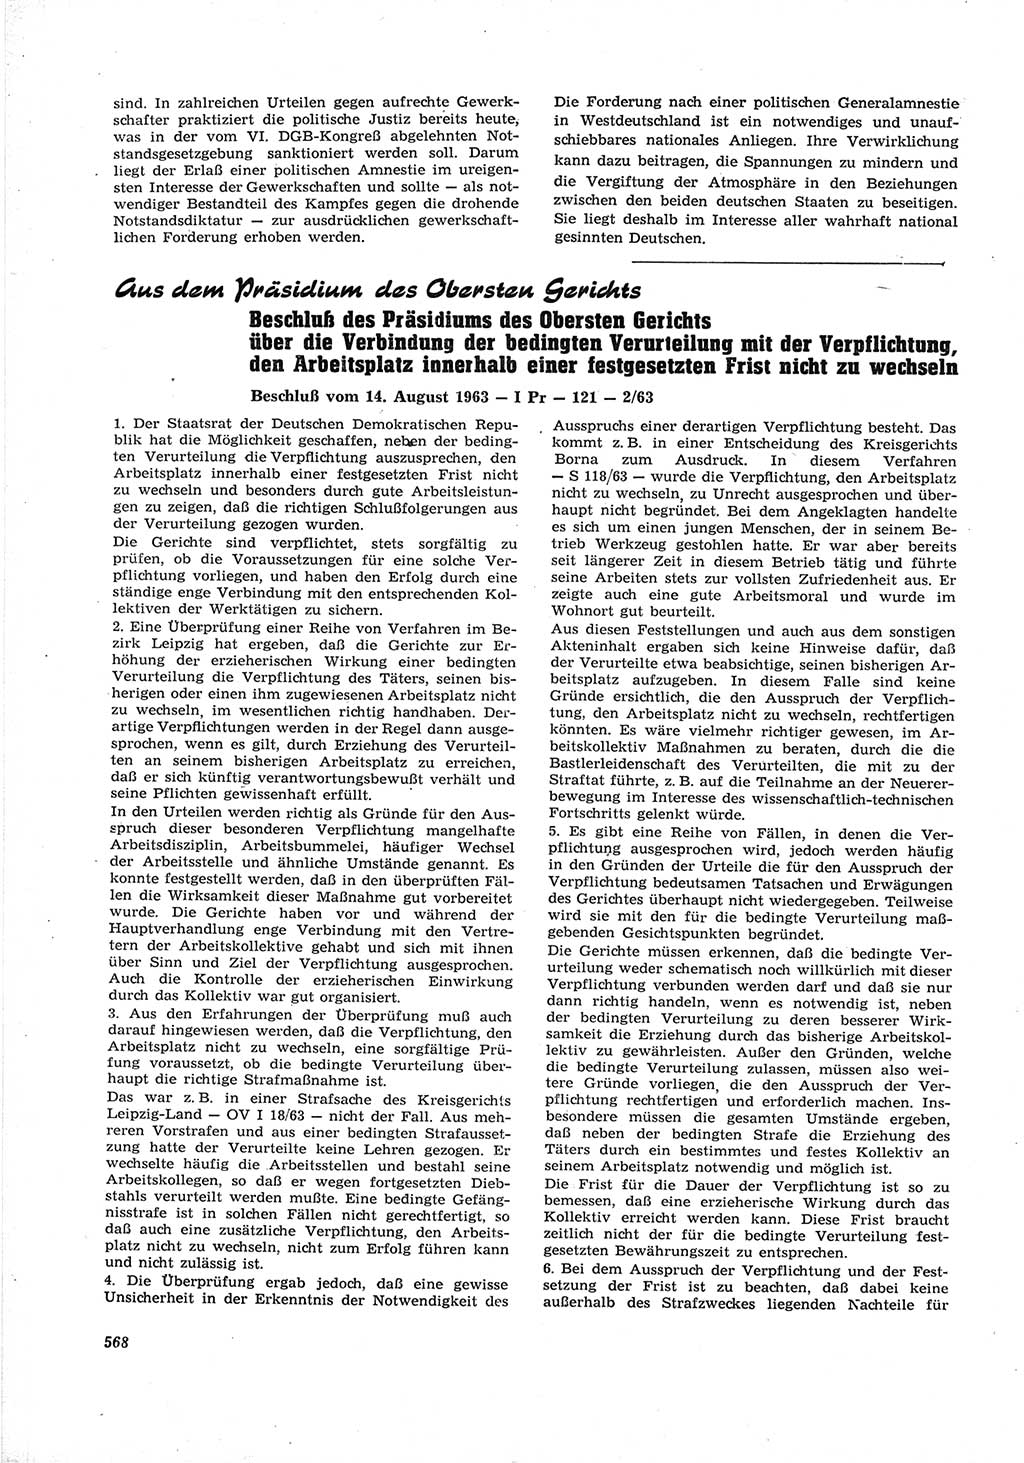 Neue Justiz (NJ), Zeitschrift für Recht und Rechtswissenschaft [Deutsche Demokratische Republik (DDR)], 17. Jahrgang 1963, Seite 568 (NJ DDR 1963, S. 568)